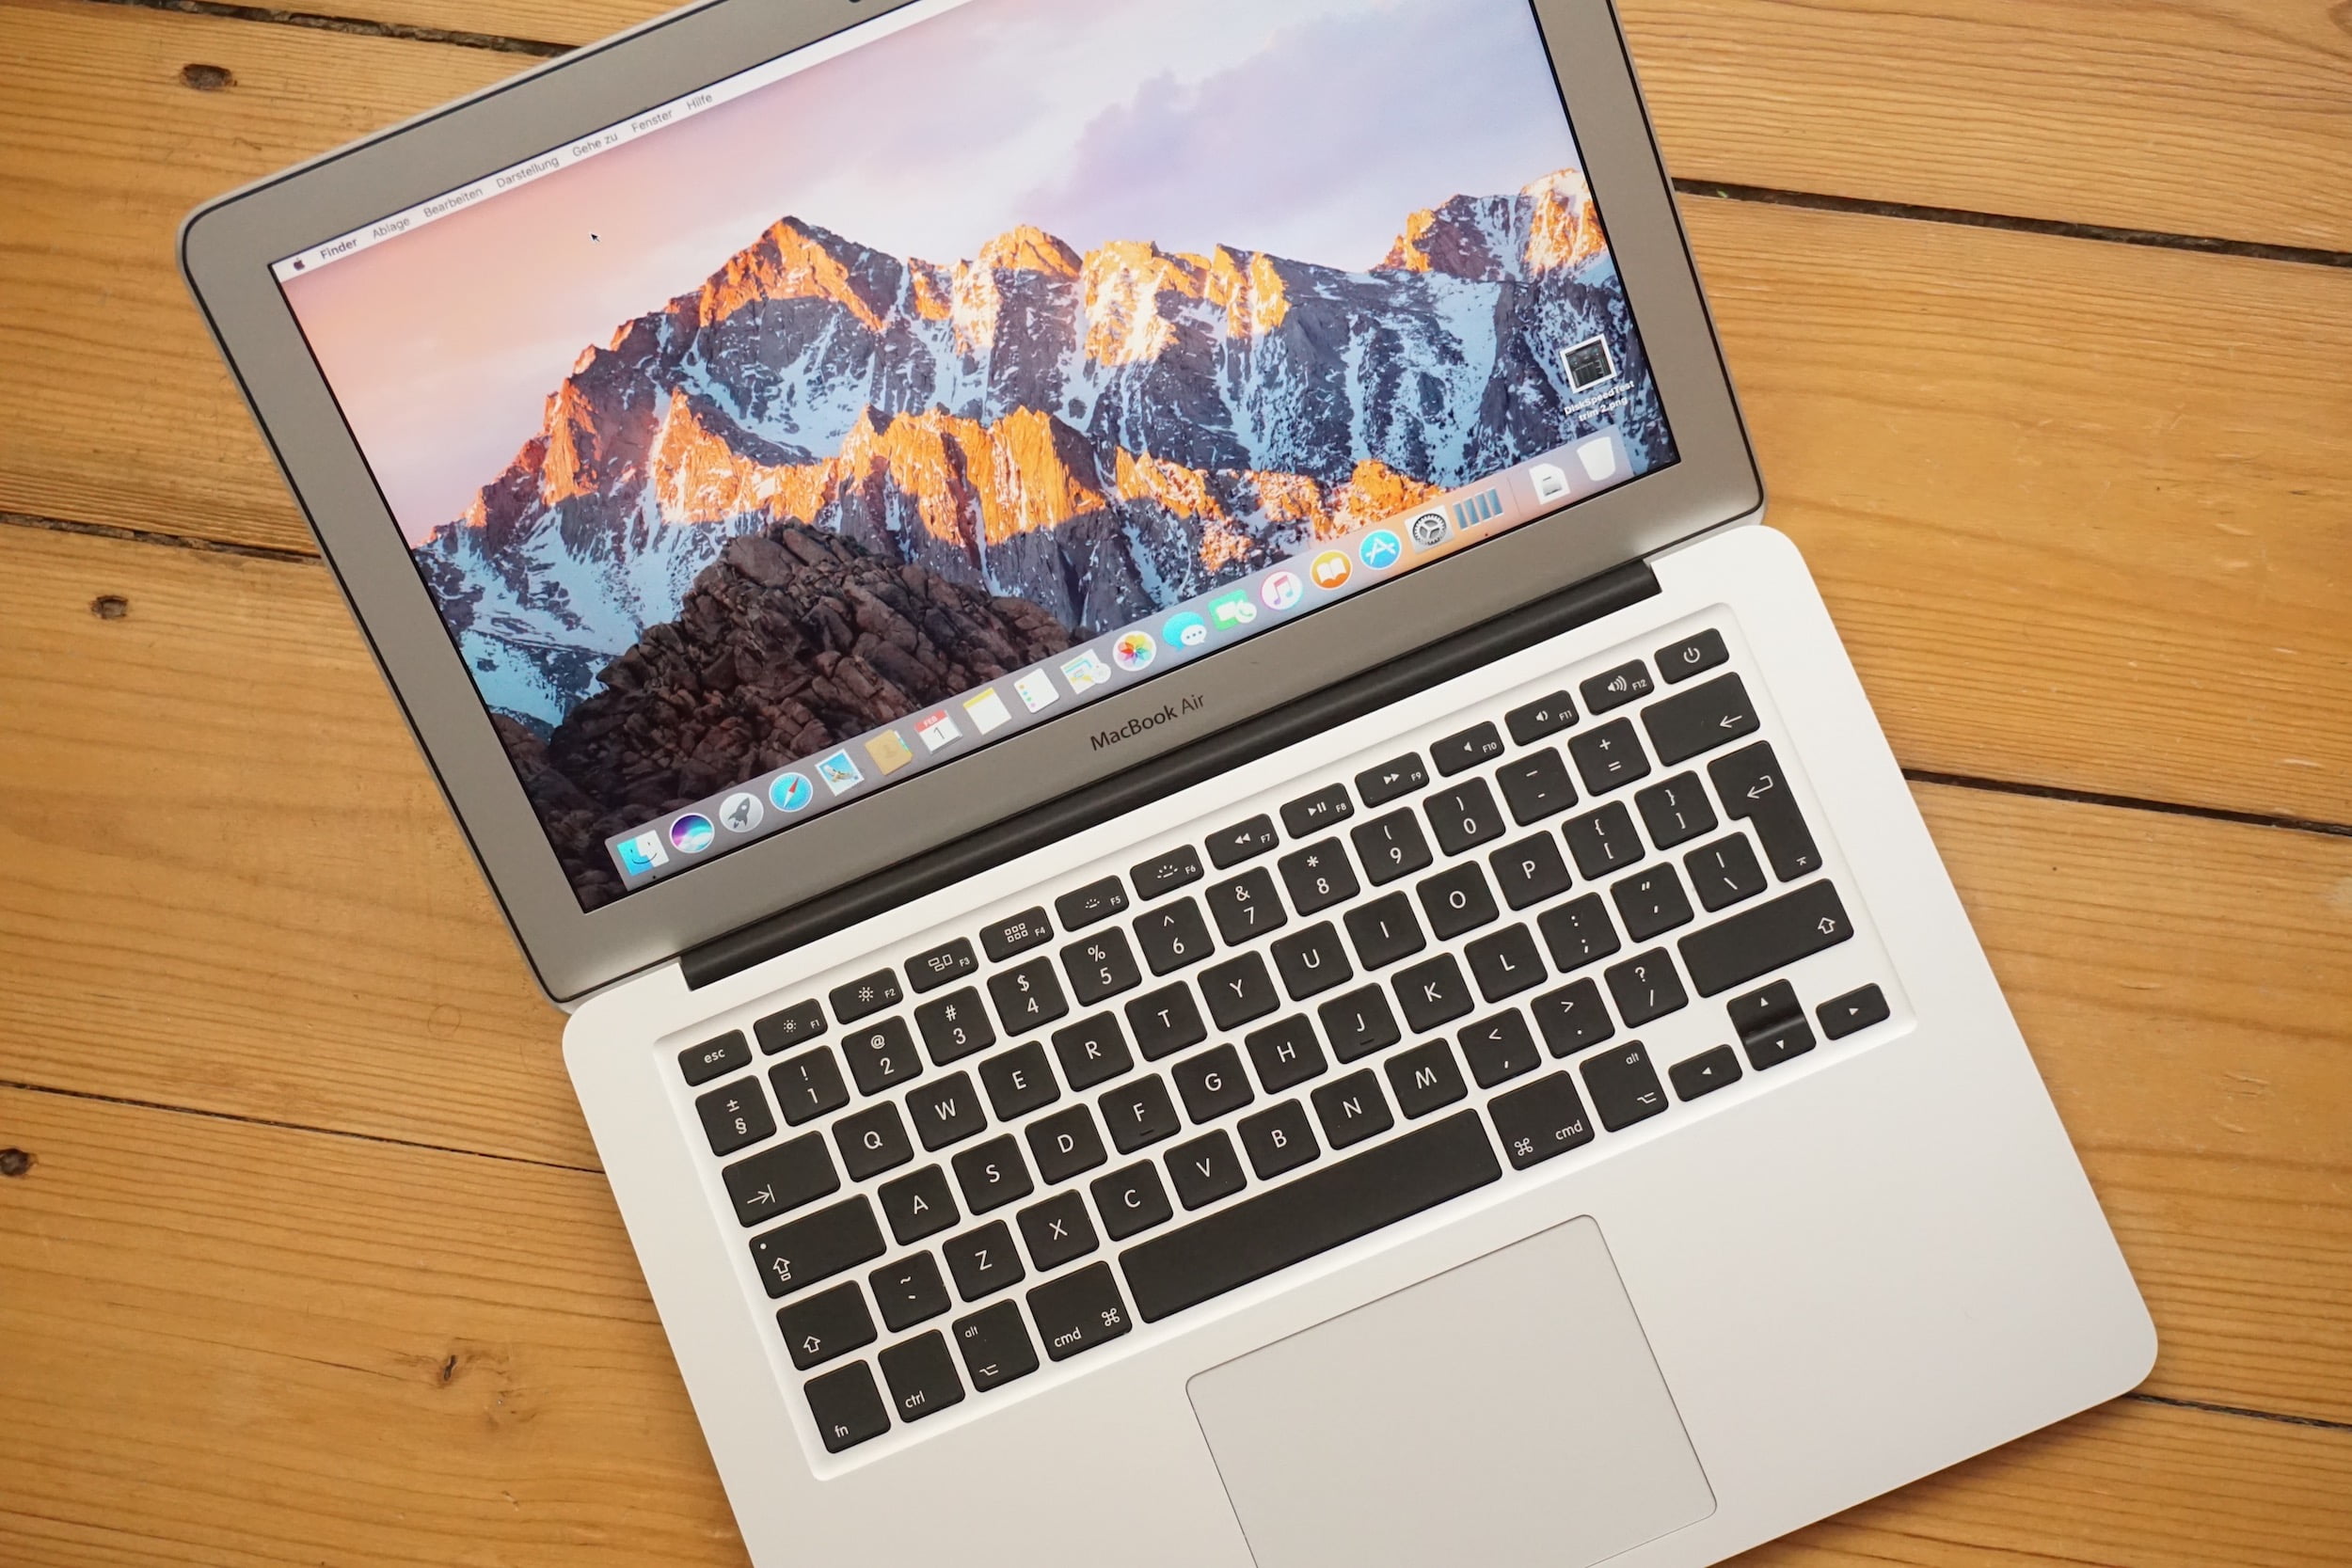 Apple Store Customer Support nutzt alte Nicht-Retina MacBook Air und iPad Air